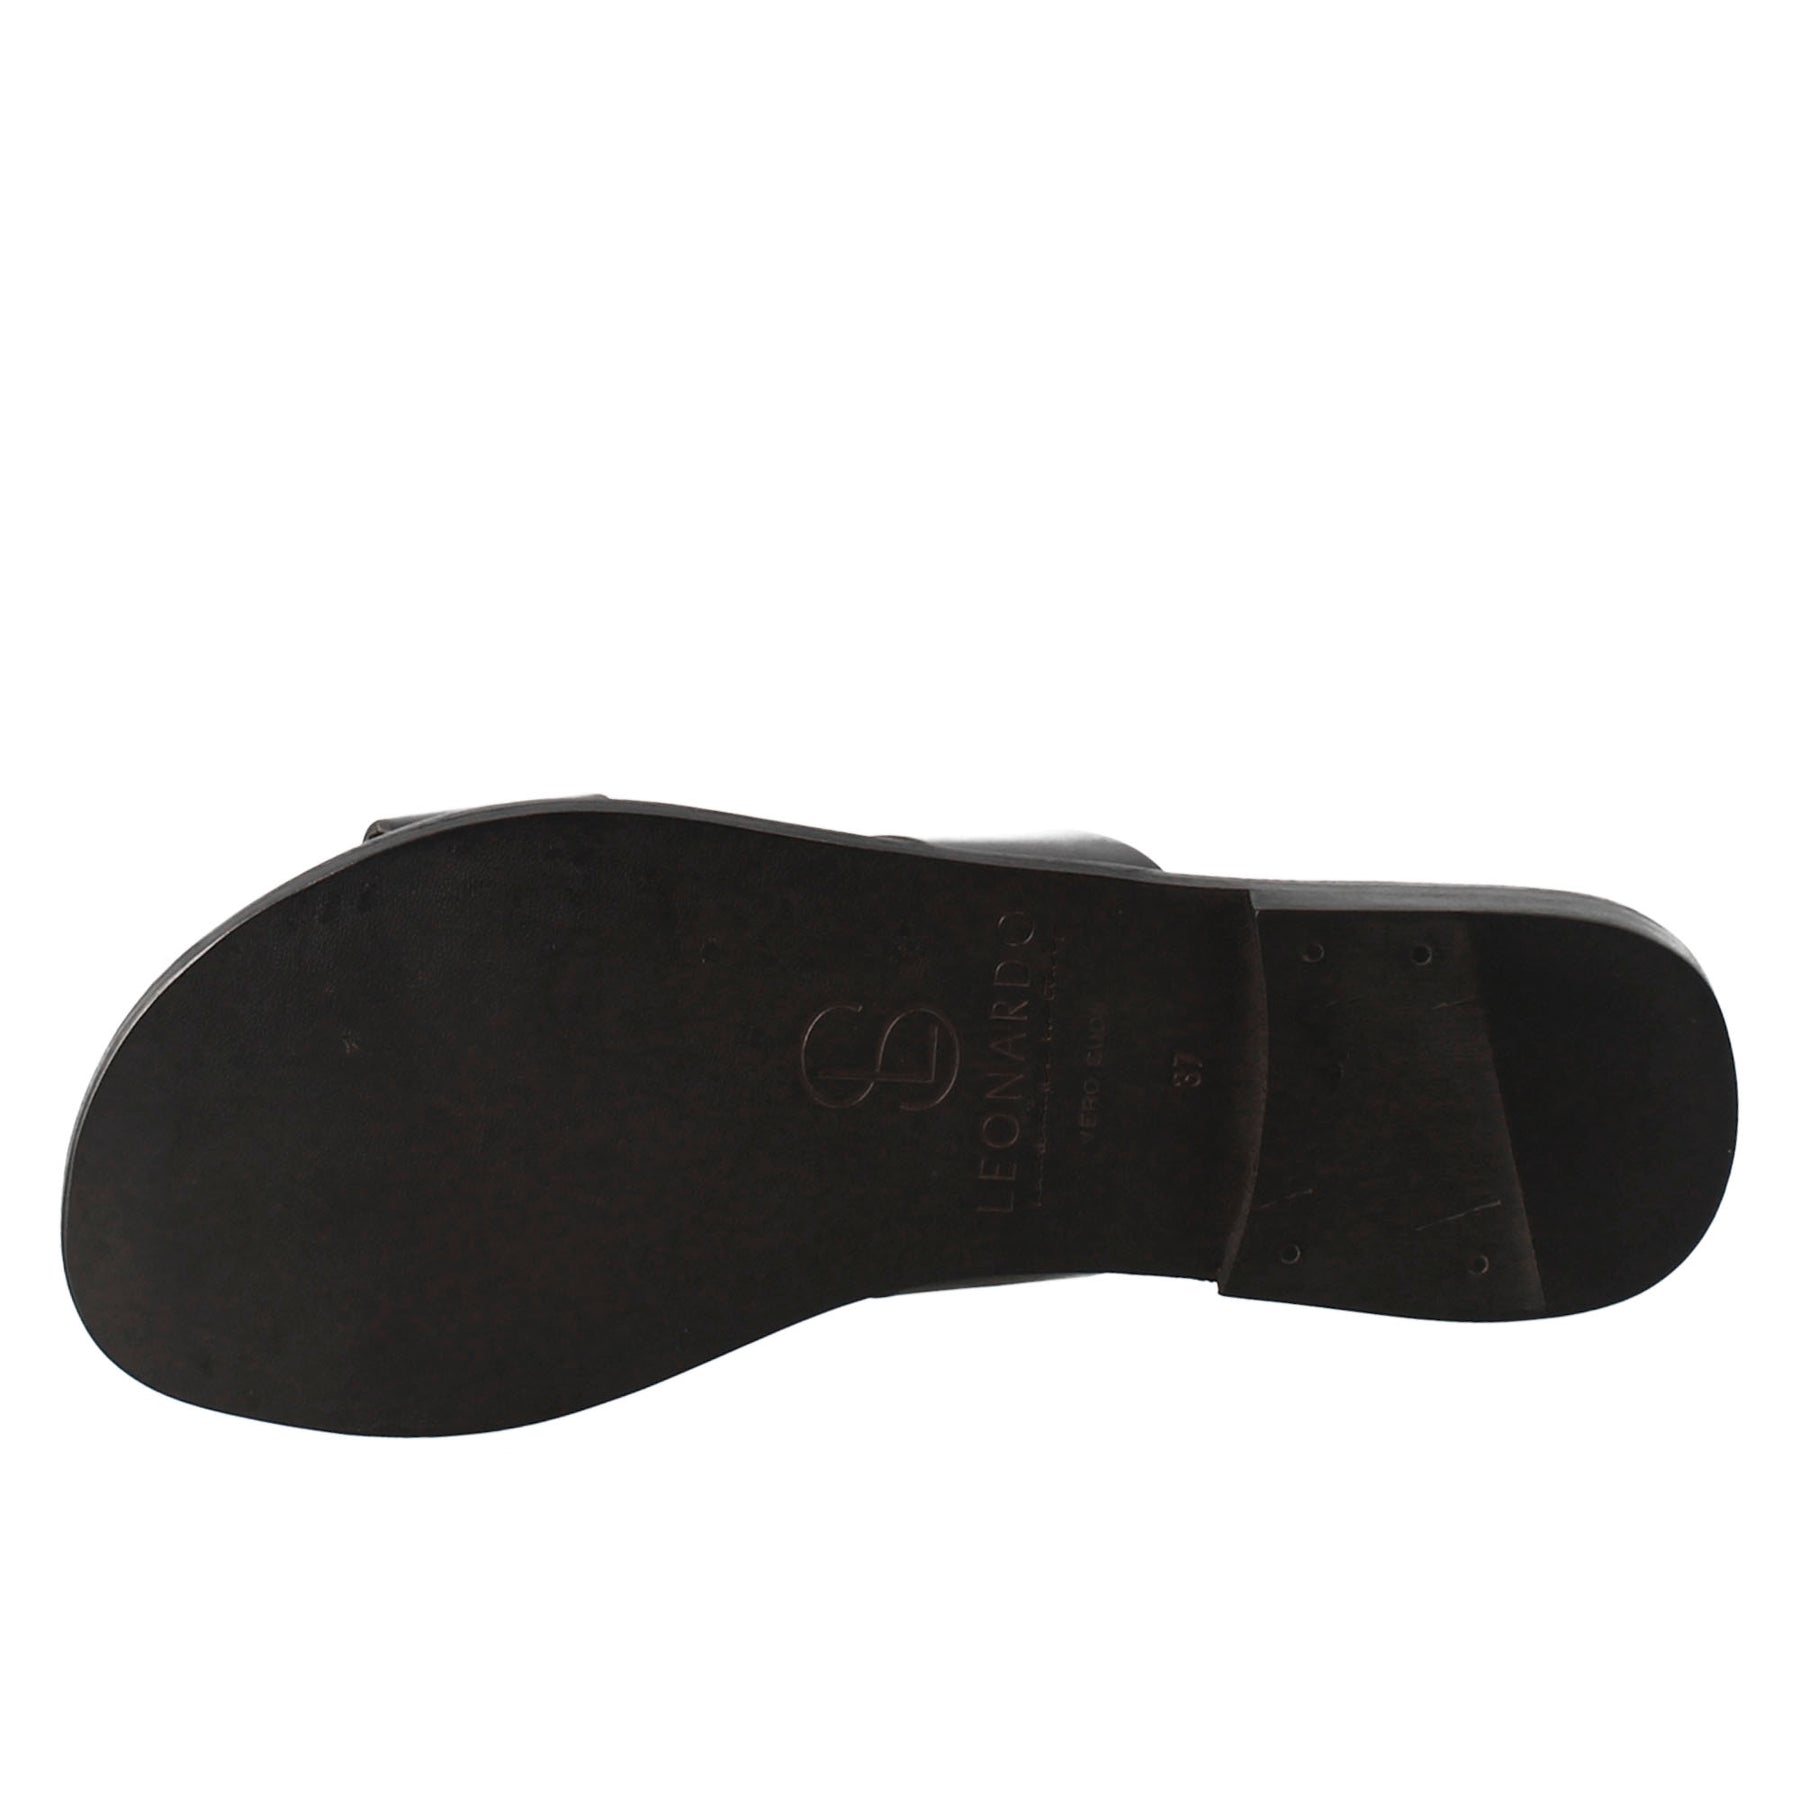 Sandales pour femmes Nirvana de style romain antique en cuir noir 